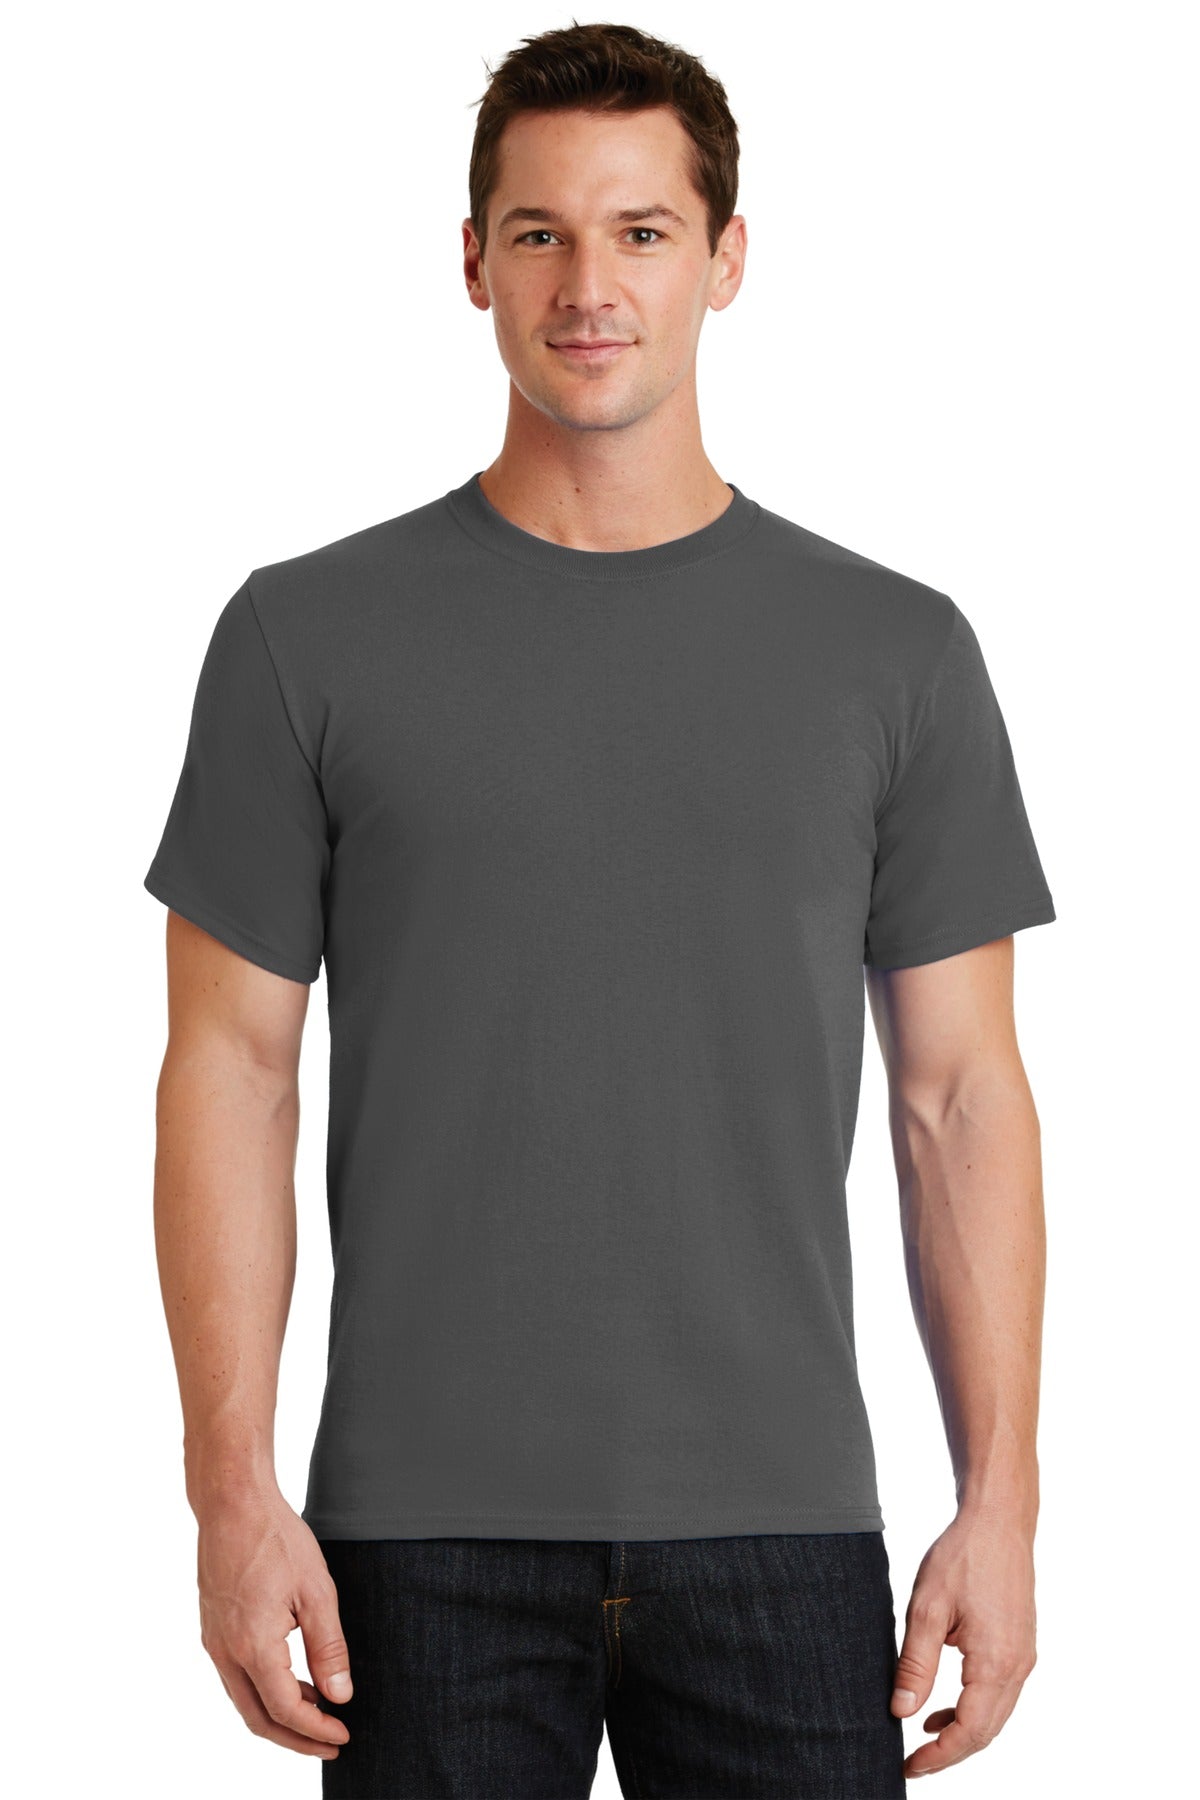 T-Shirts Charcoal Port & Company